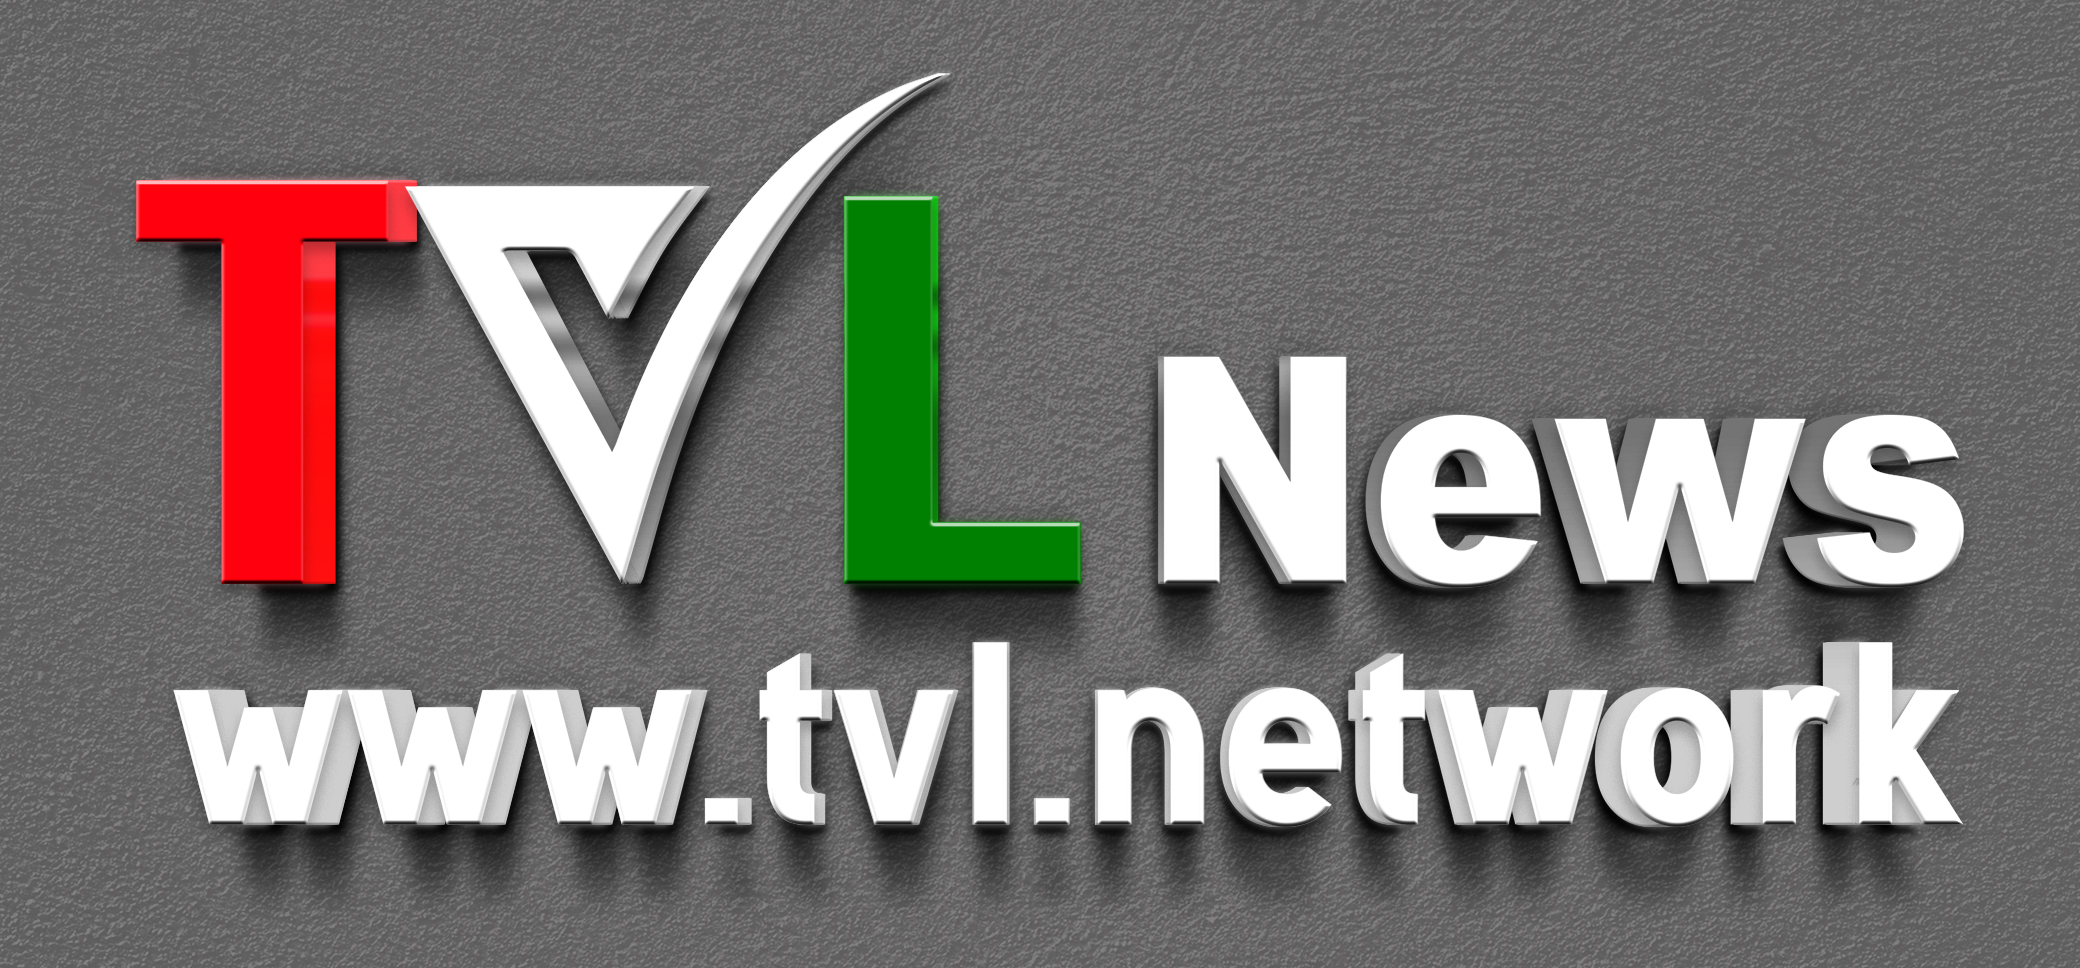 TVL Network